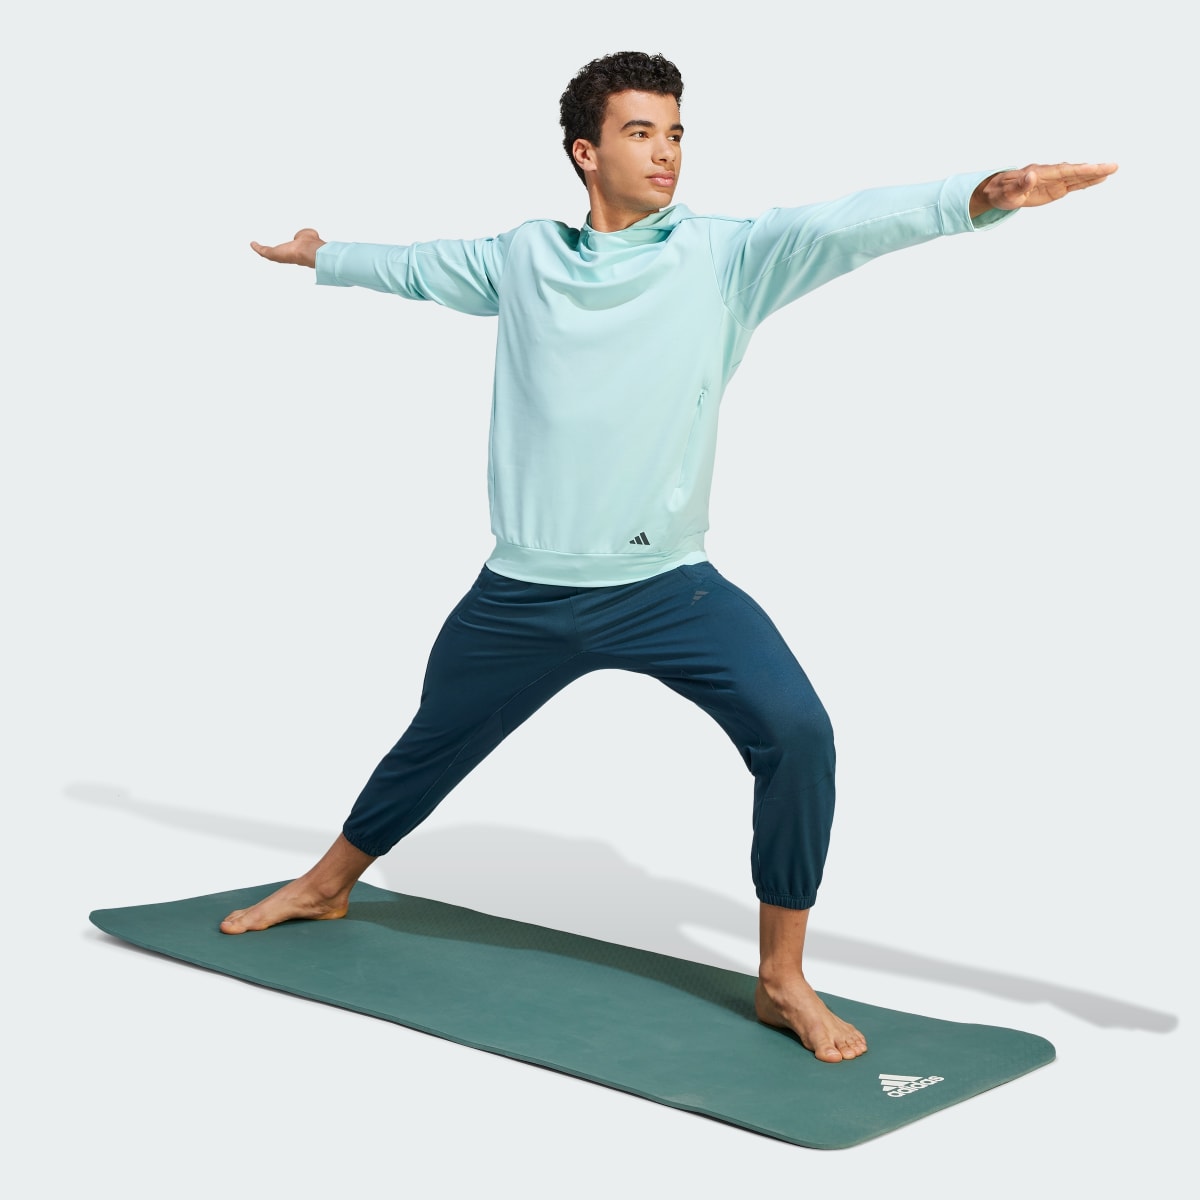 Adidas Sudadera con Gorro de Entrenamiento Yoga. 4